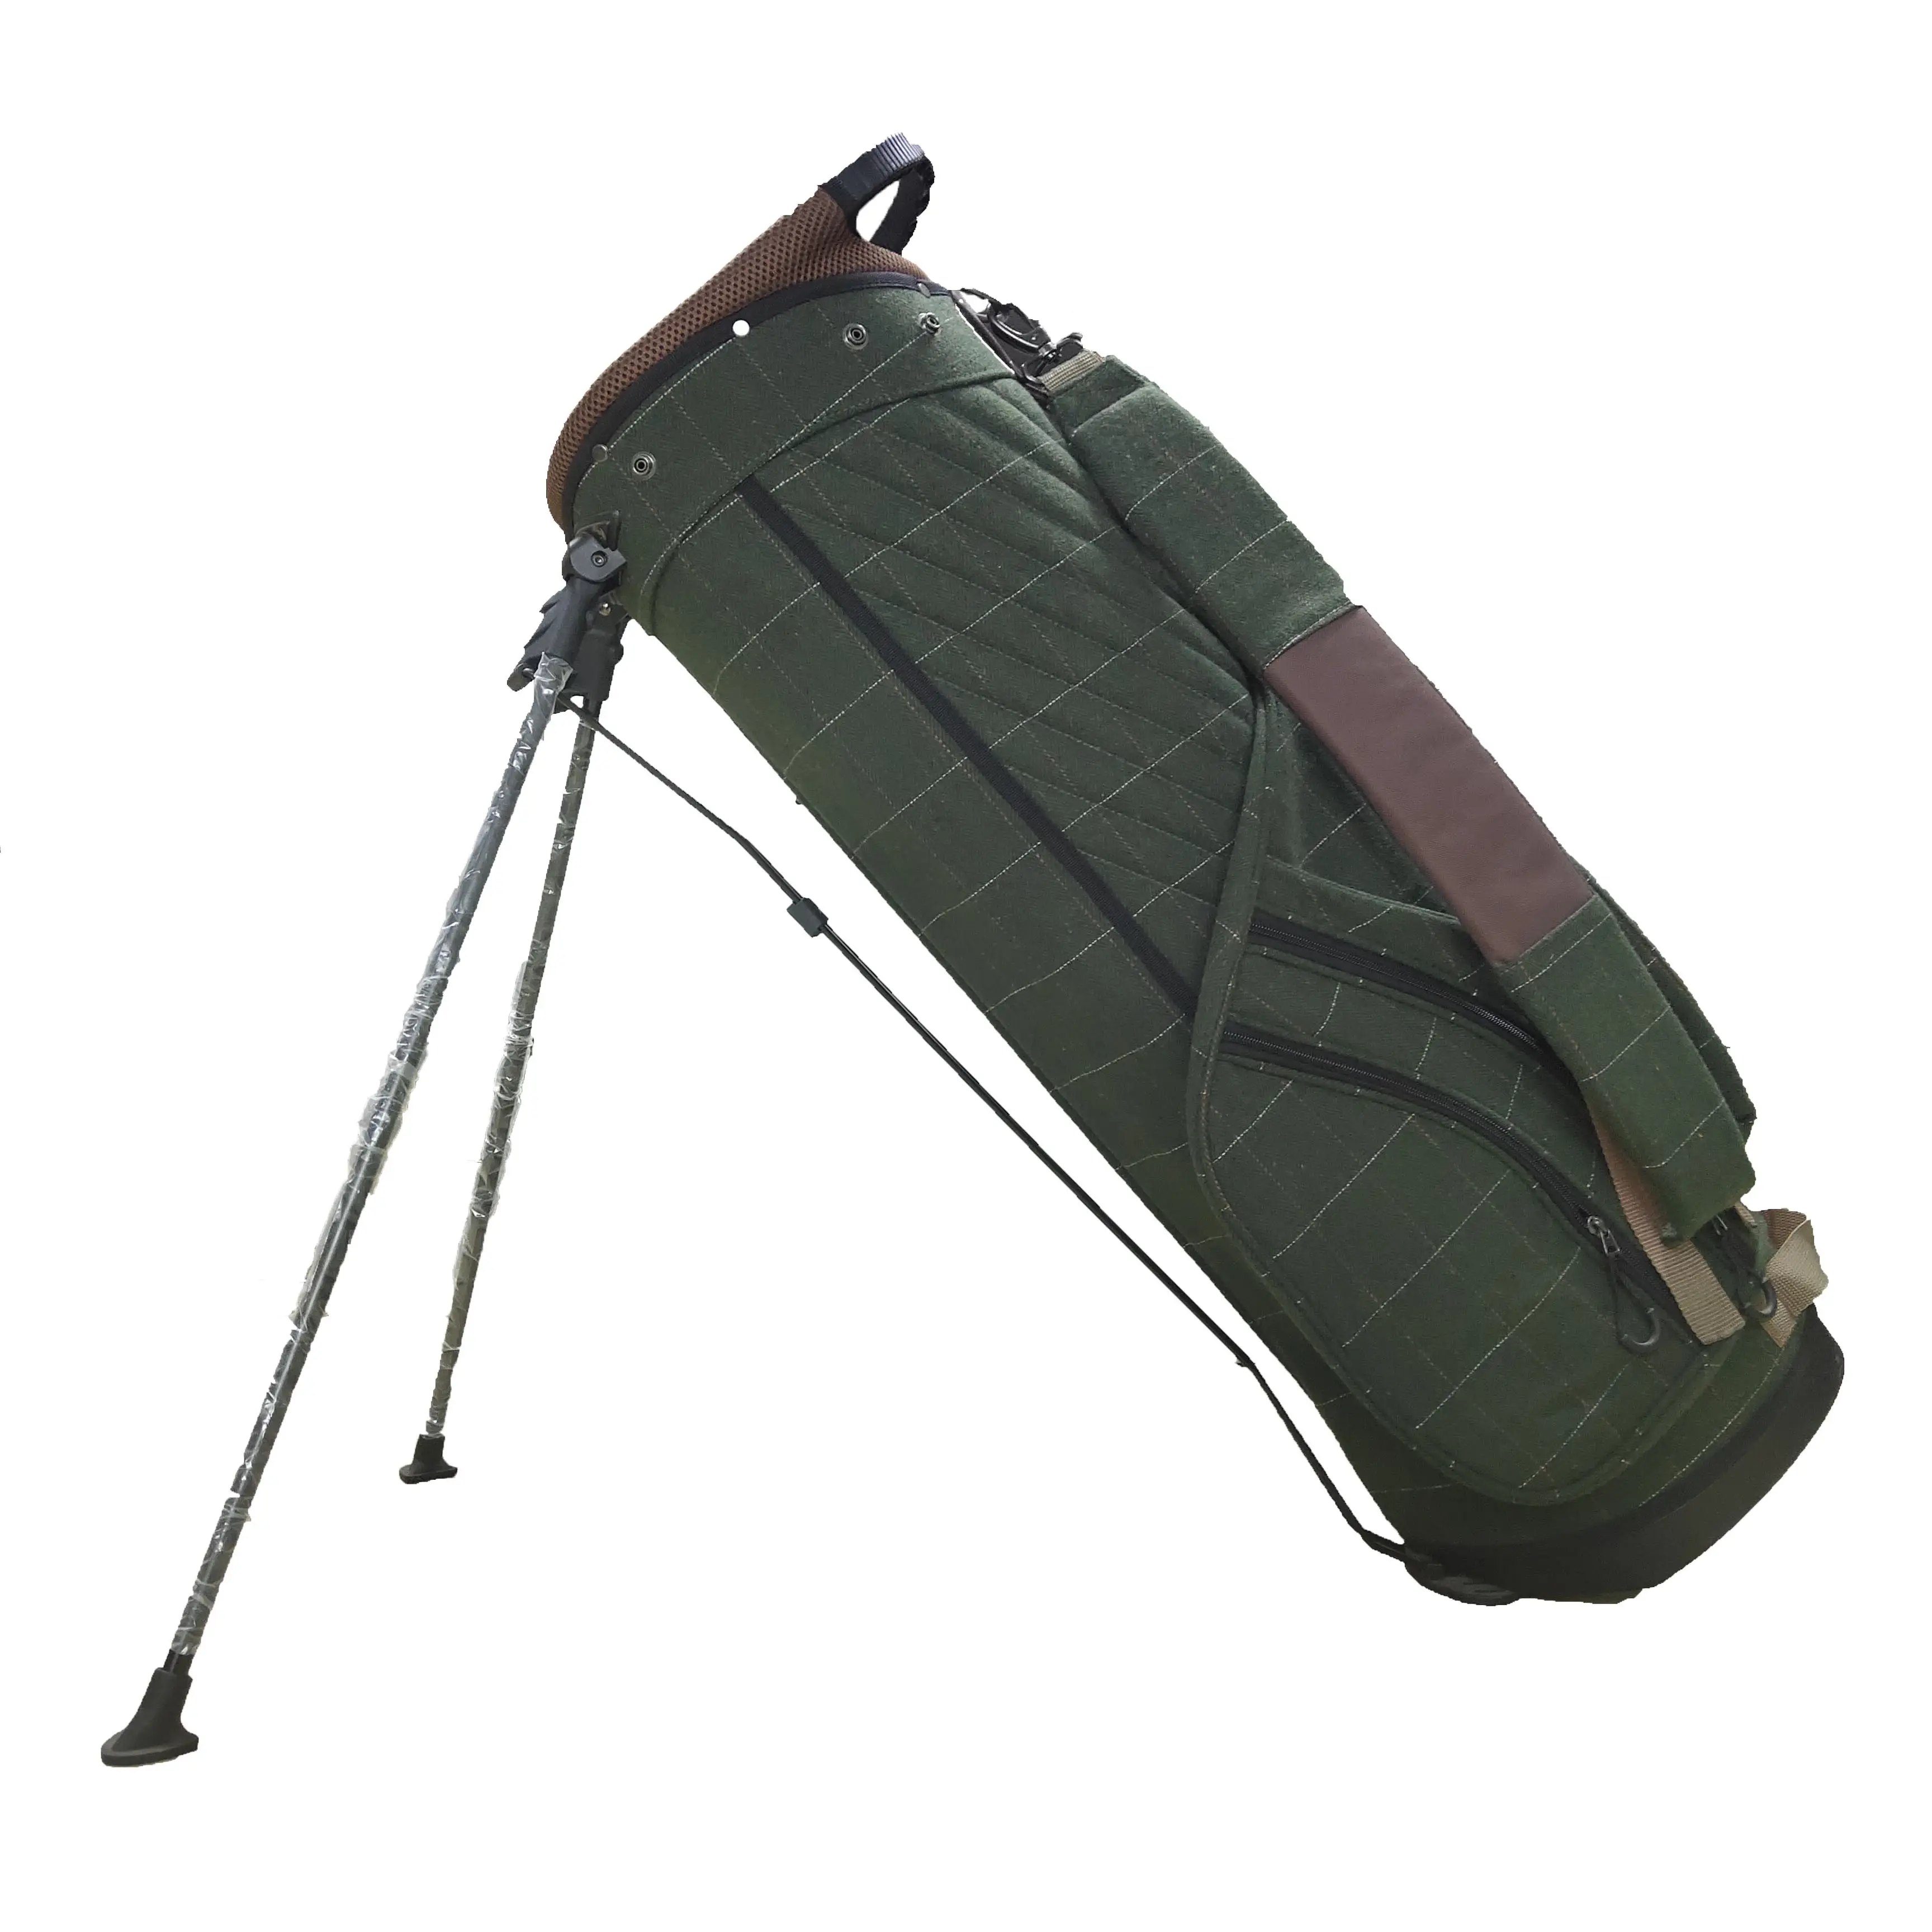 Golf Stand Bag für Herren Navy 5-Wege-Divider-Golftaschen, leichte tragbare Lauf-/Reit taschen mit Staubs chutz, Riemen